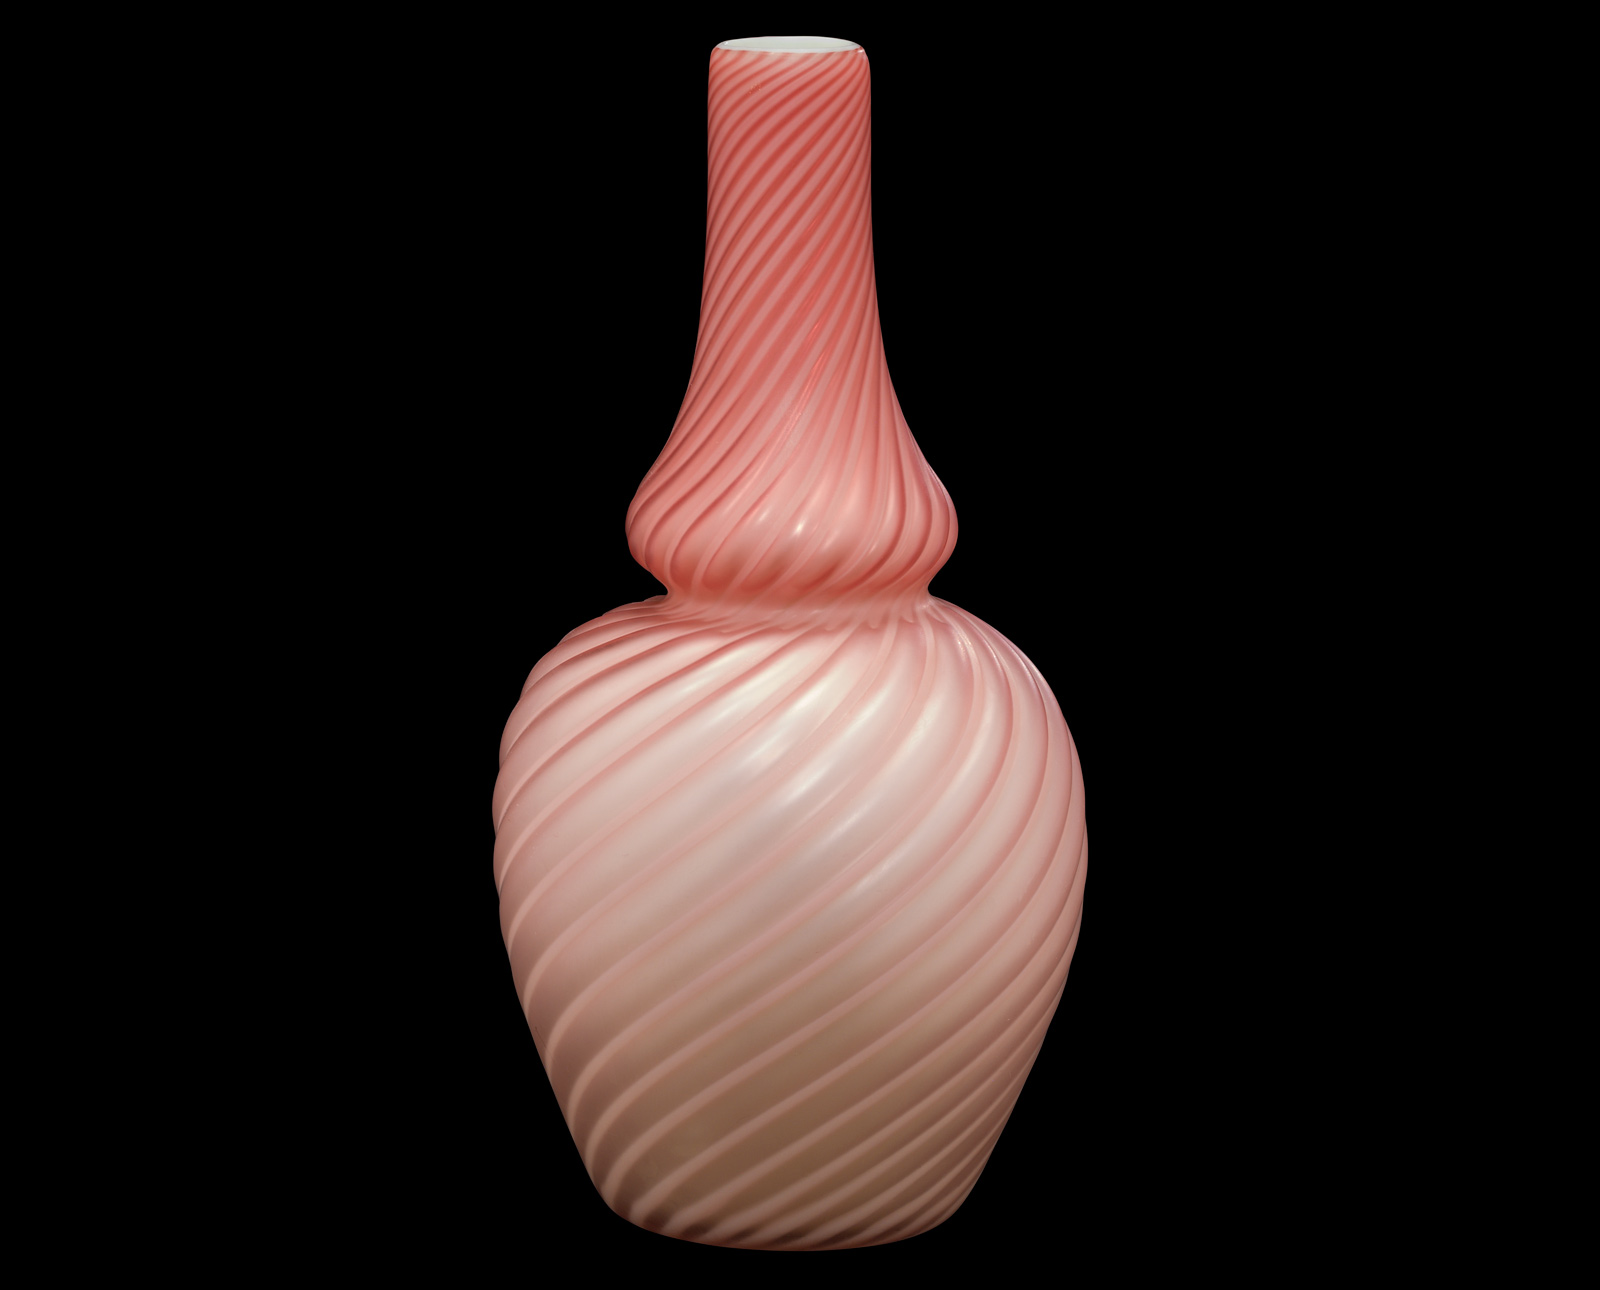 Pompeiian Ware Vase, Stevens & Williams, Stourbridge, England, 1880-90. Overall Height: 30.5 cm; Body Diameter: 14.7 cm. (70.2.17, gift of Mr. and Mrs. Gillett Welles, Sr.)